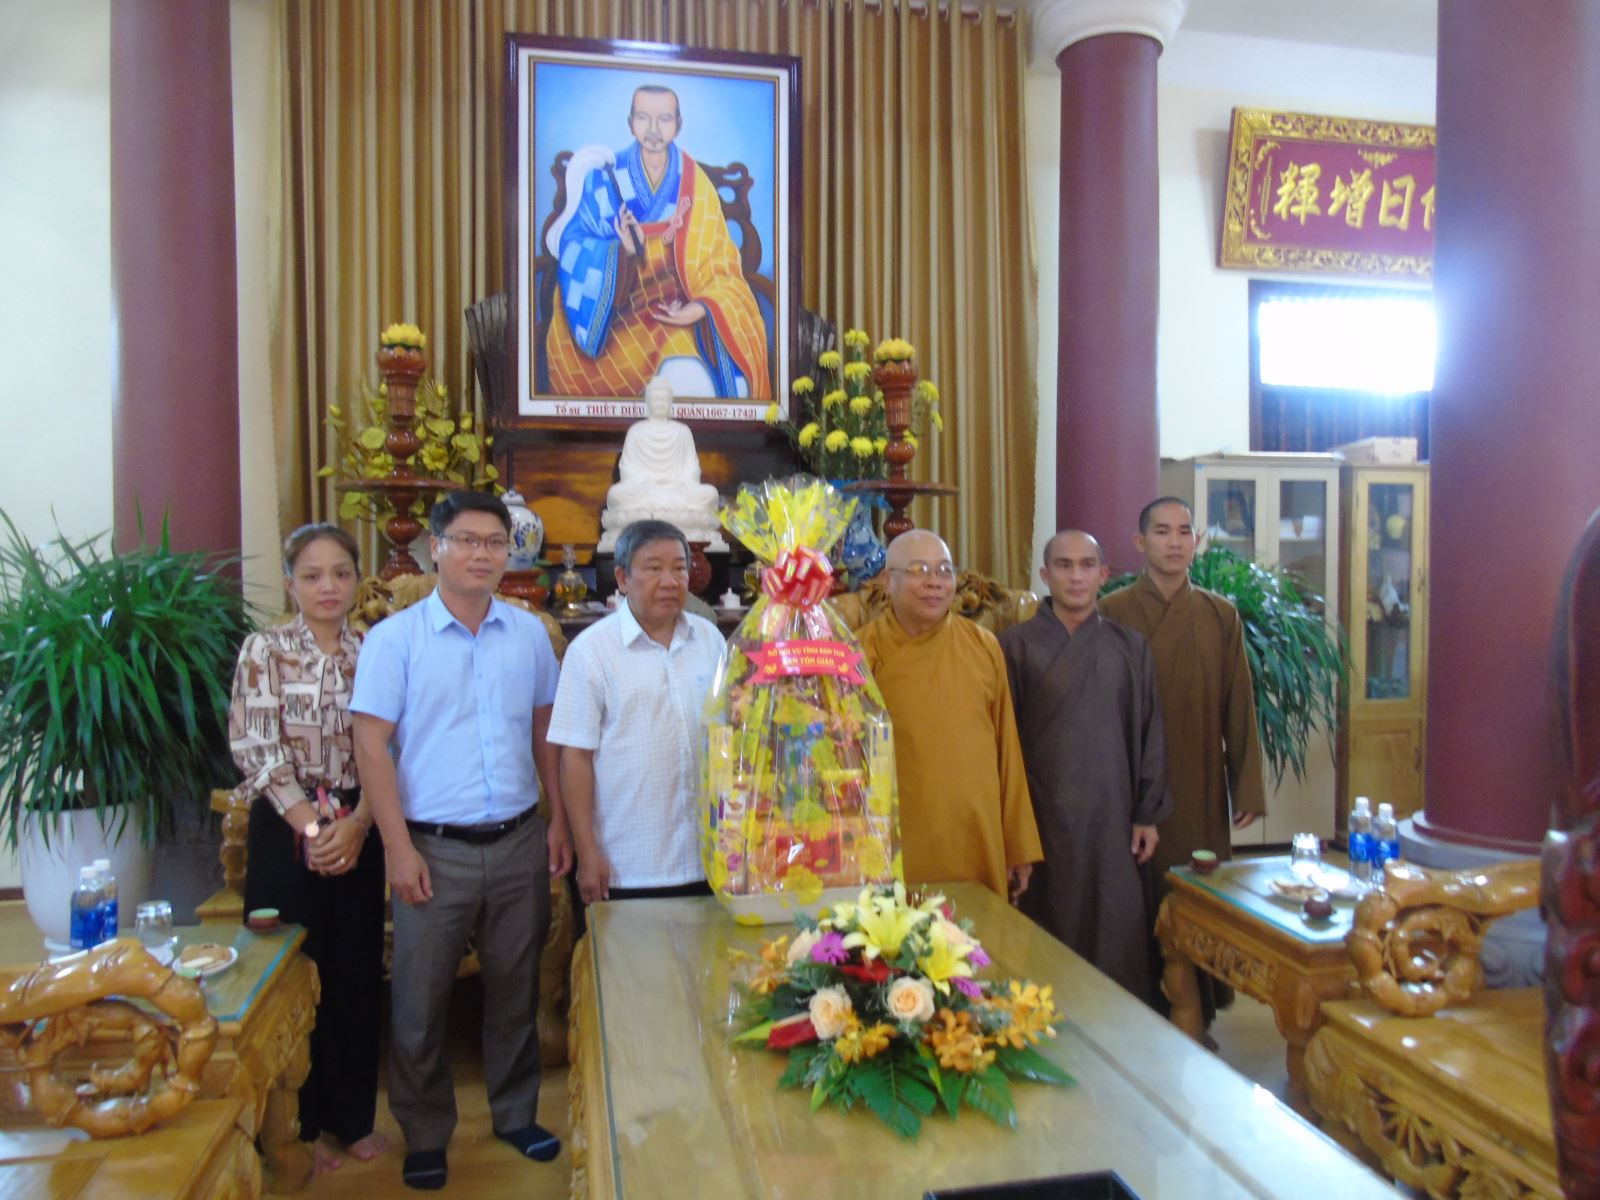 Lãnh đạo Sở Nội vụ, Ban Tôn giáo tỉnh thăm và chúc mừng nhân dịp  Lễ Vu Lan PL.2564-DL.2020 các chức sắc, cơ sở tôn giáo của đạo Phật